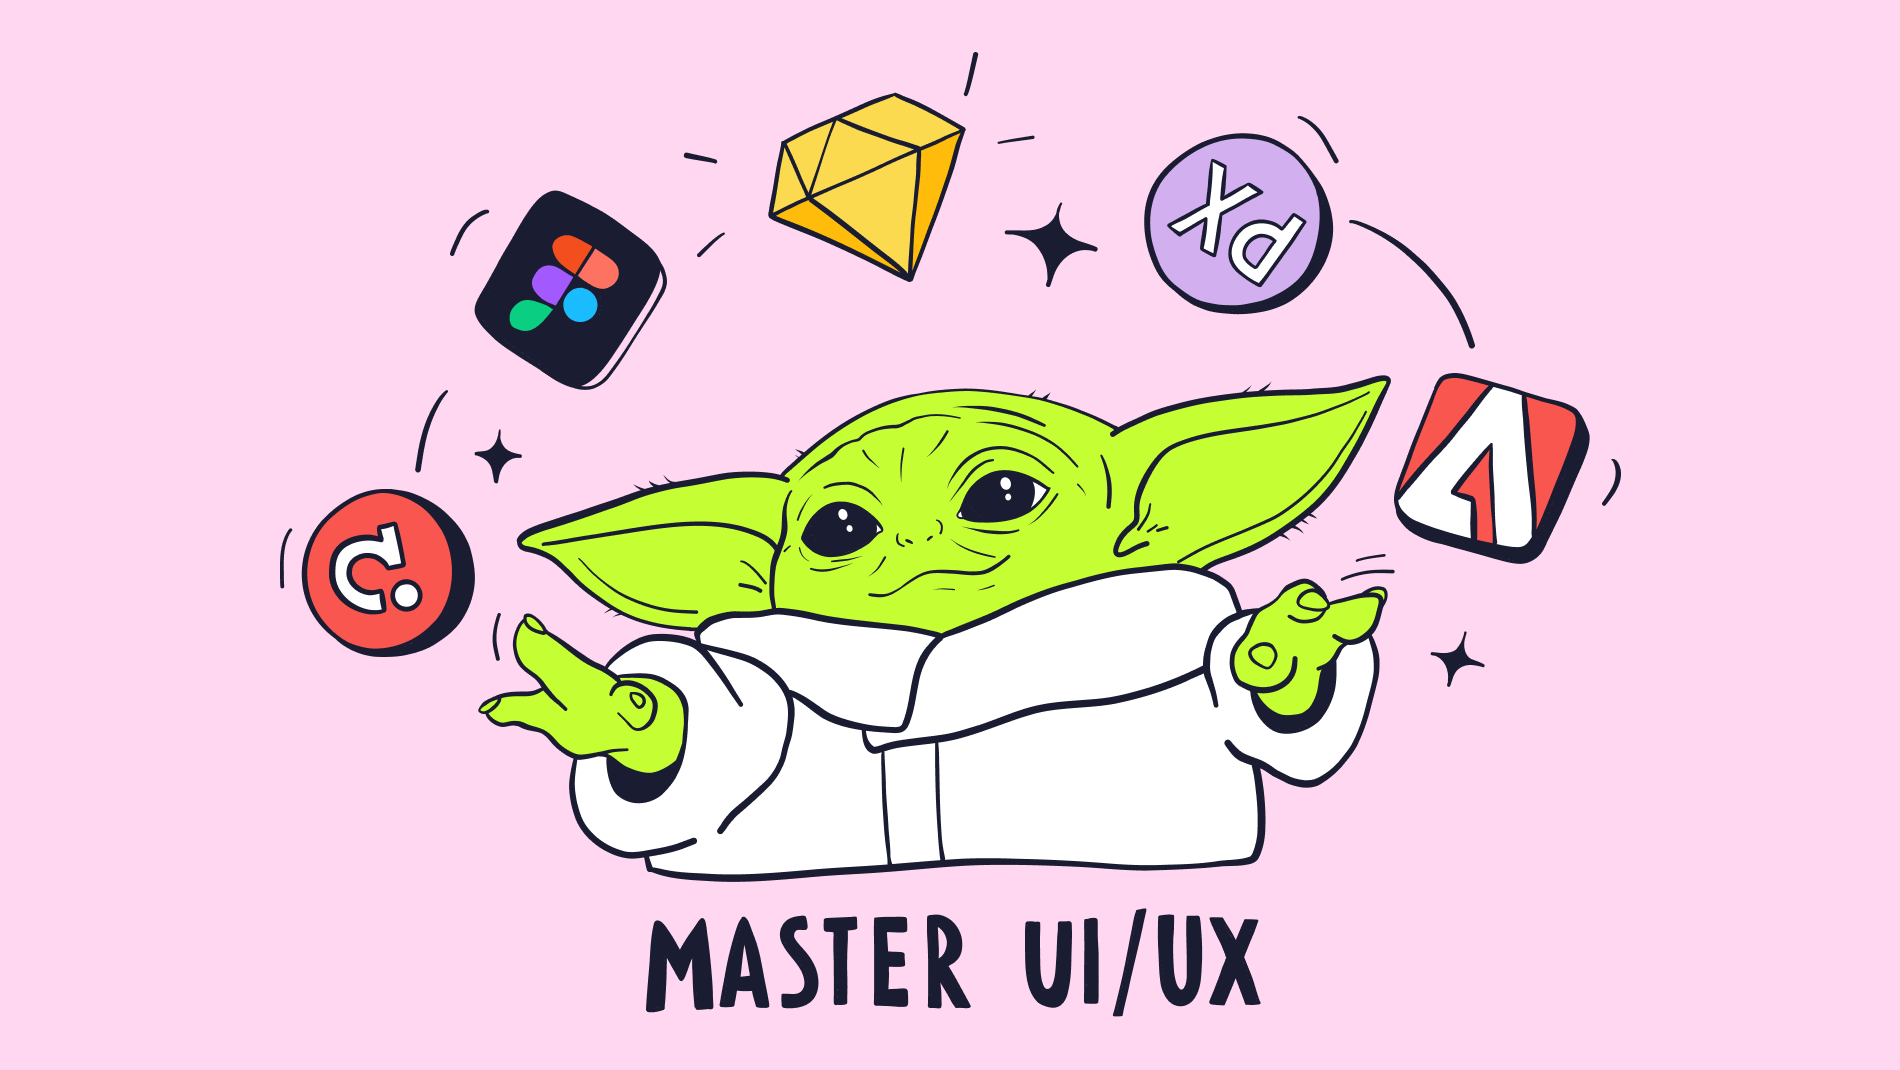 Мастер UI UX_ Стартовое руководство для начинающих